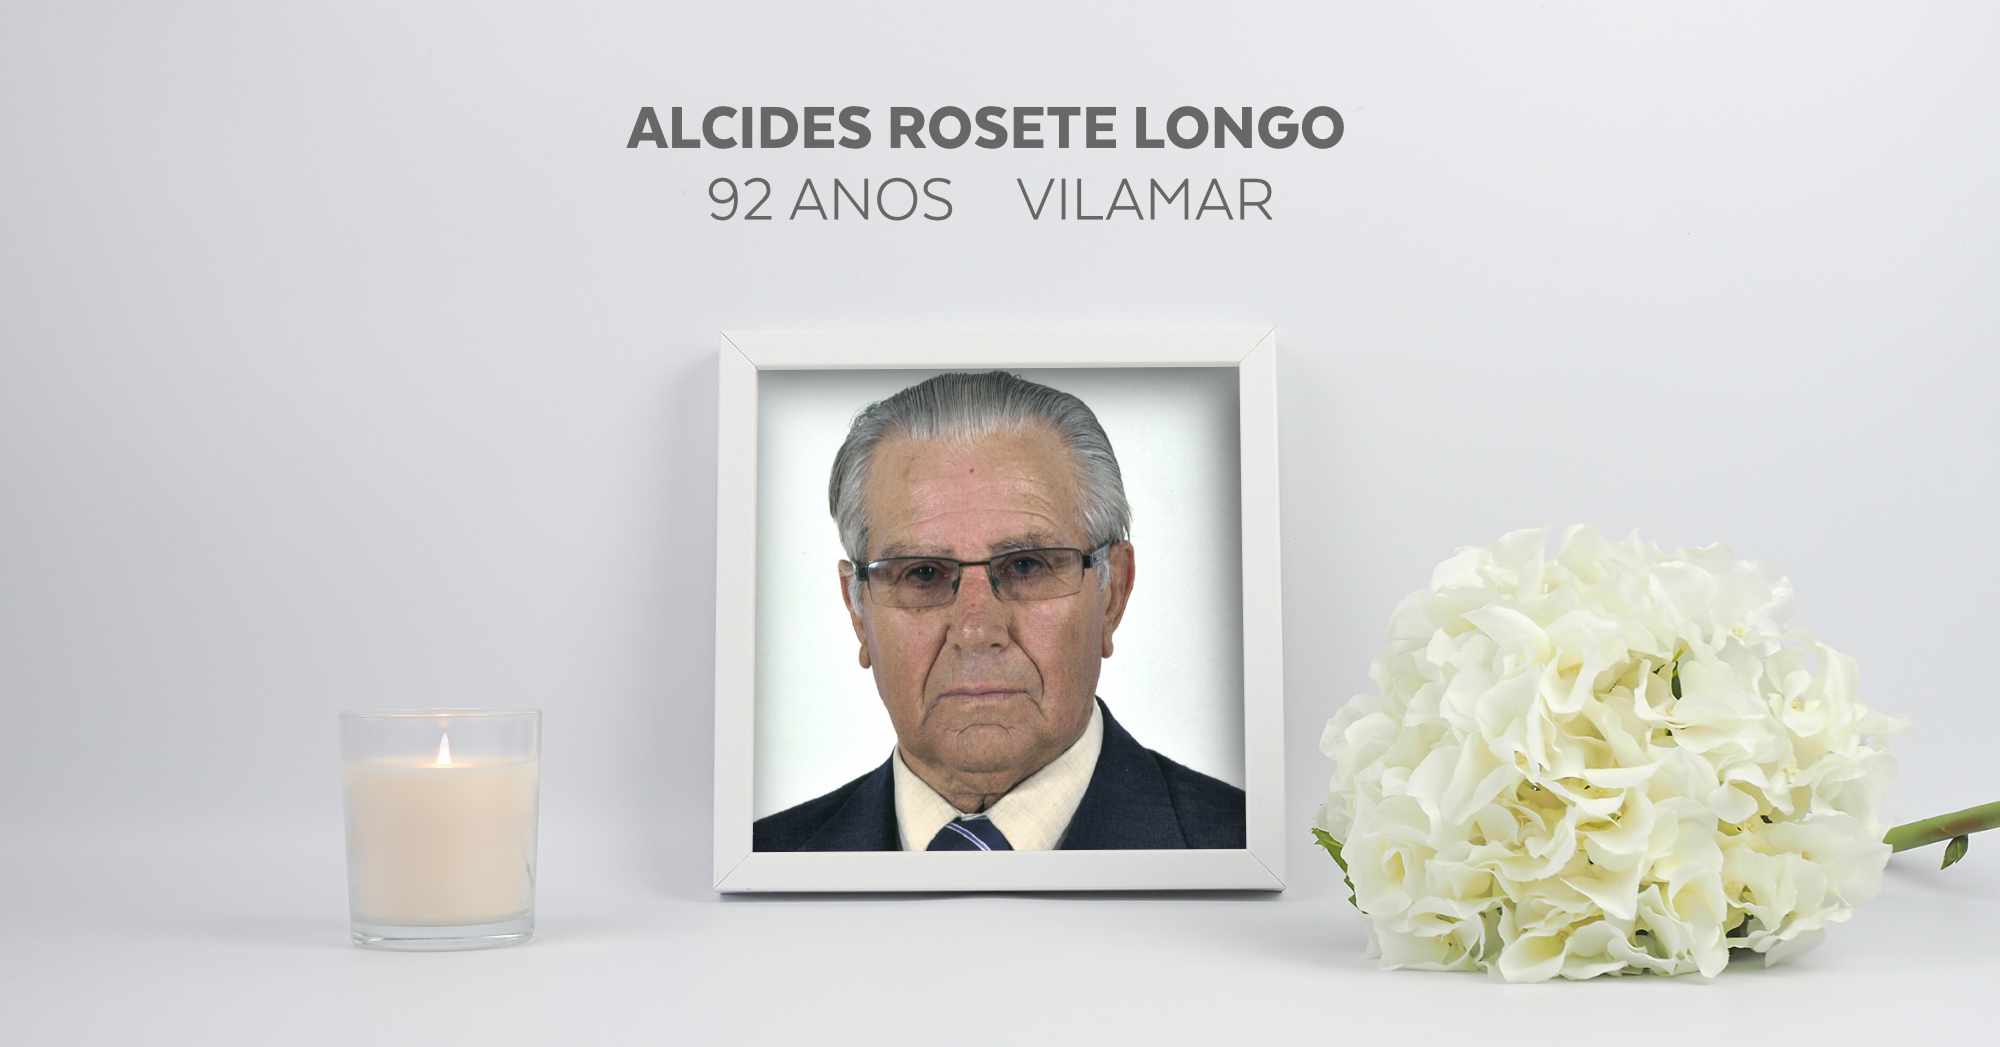 Alcides Rosete Longo